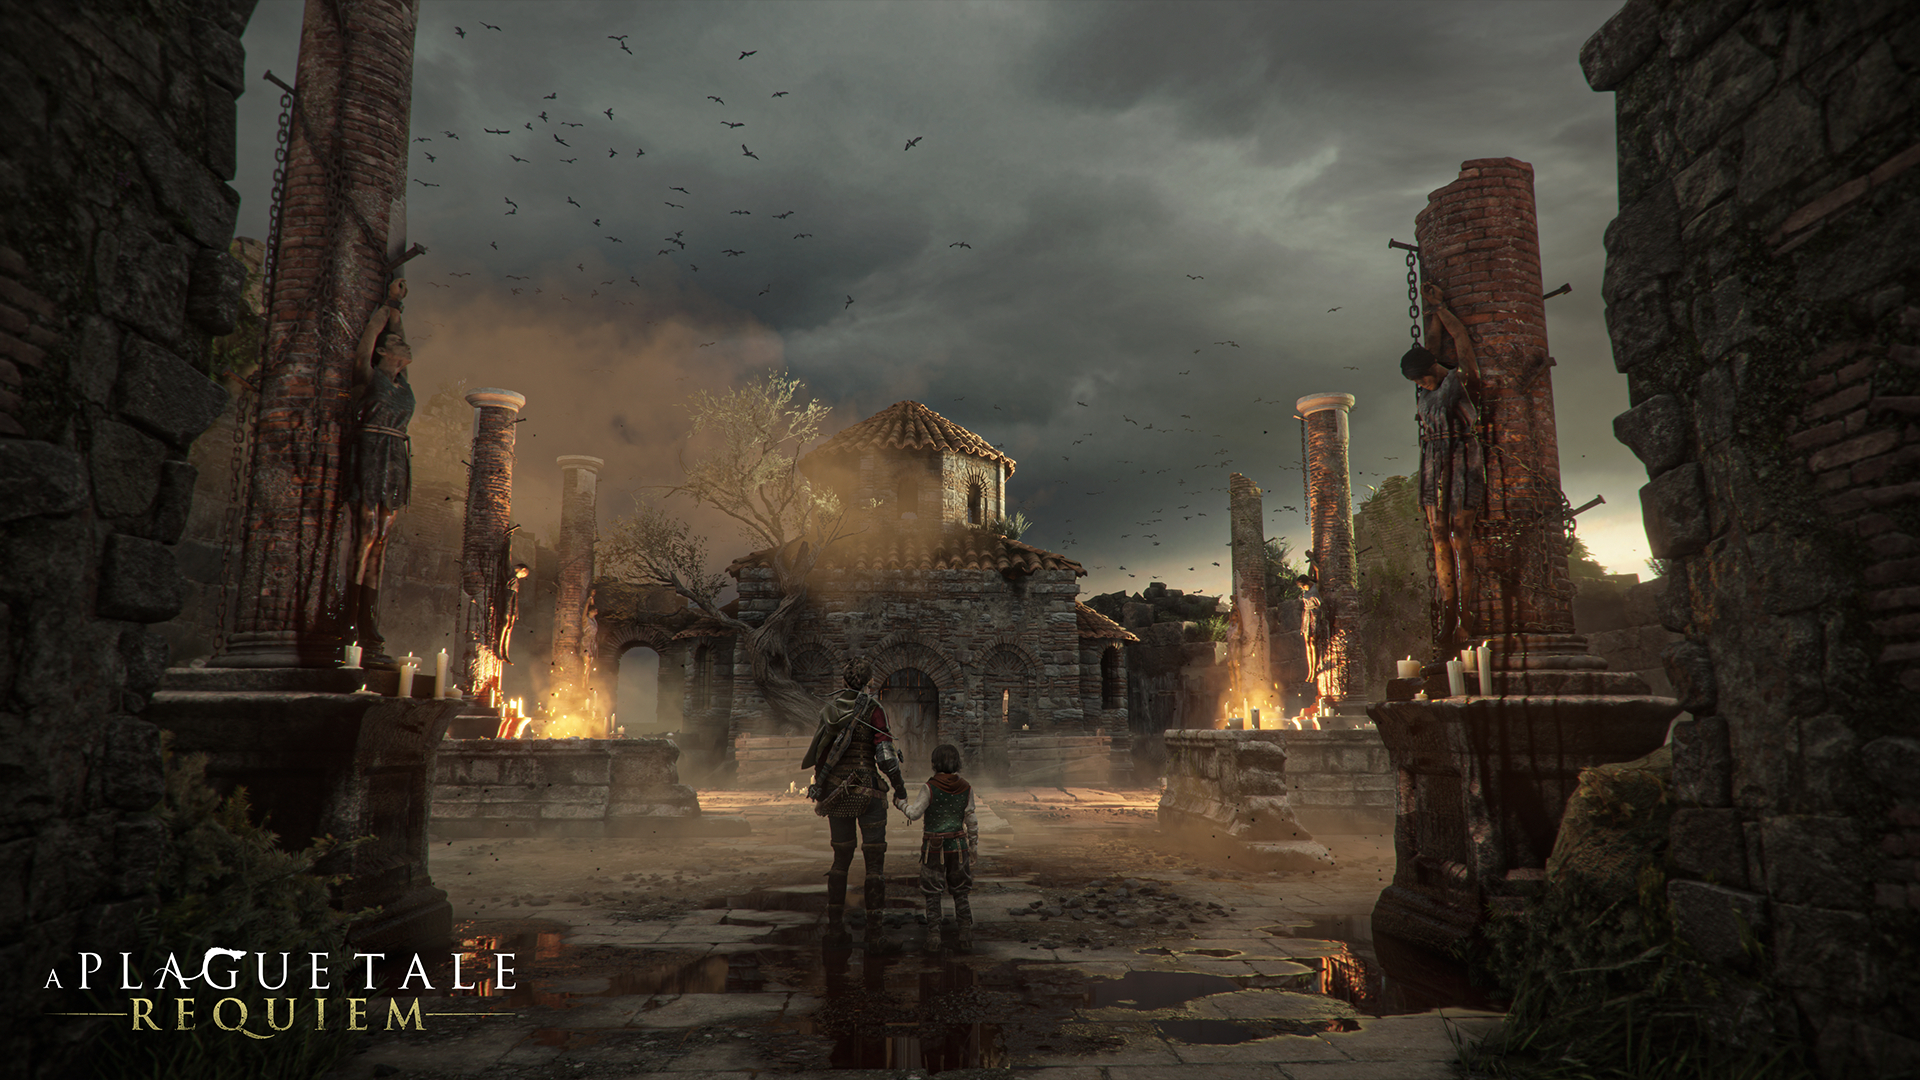 Official image of A Plague Tale: Requiem.